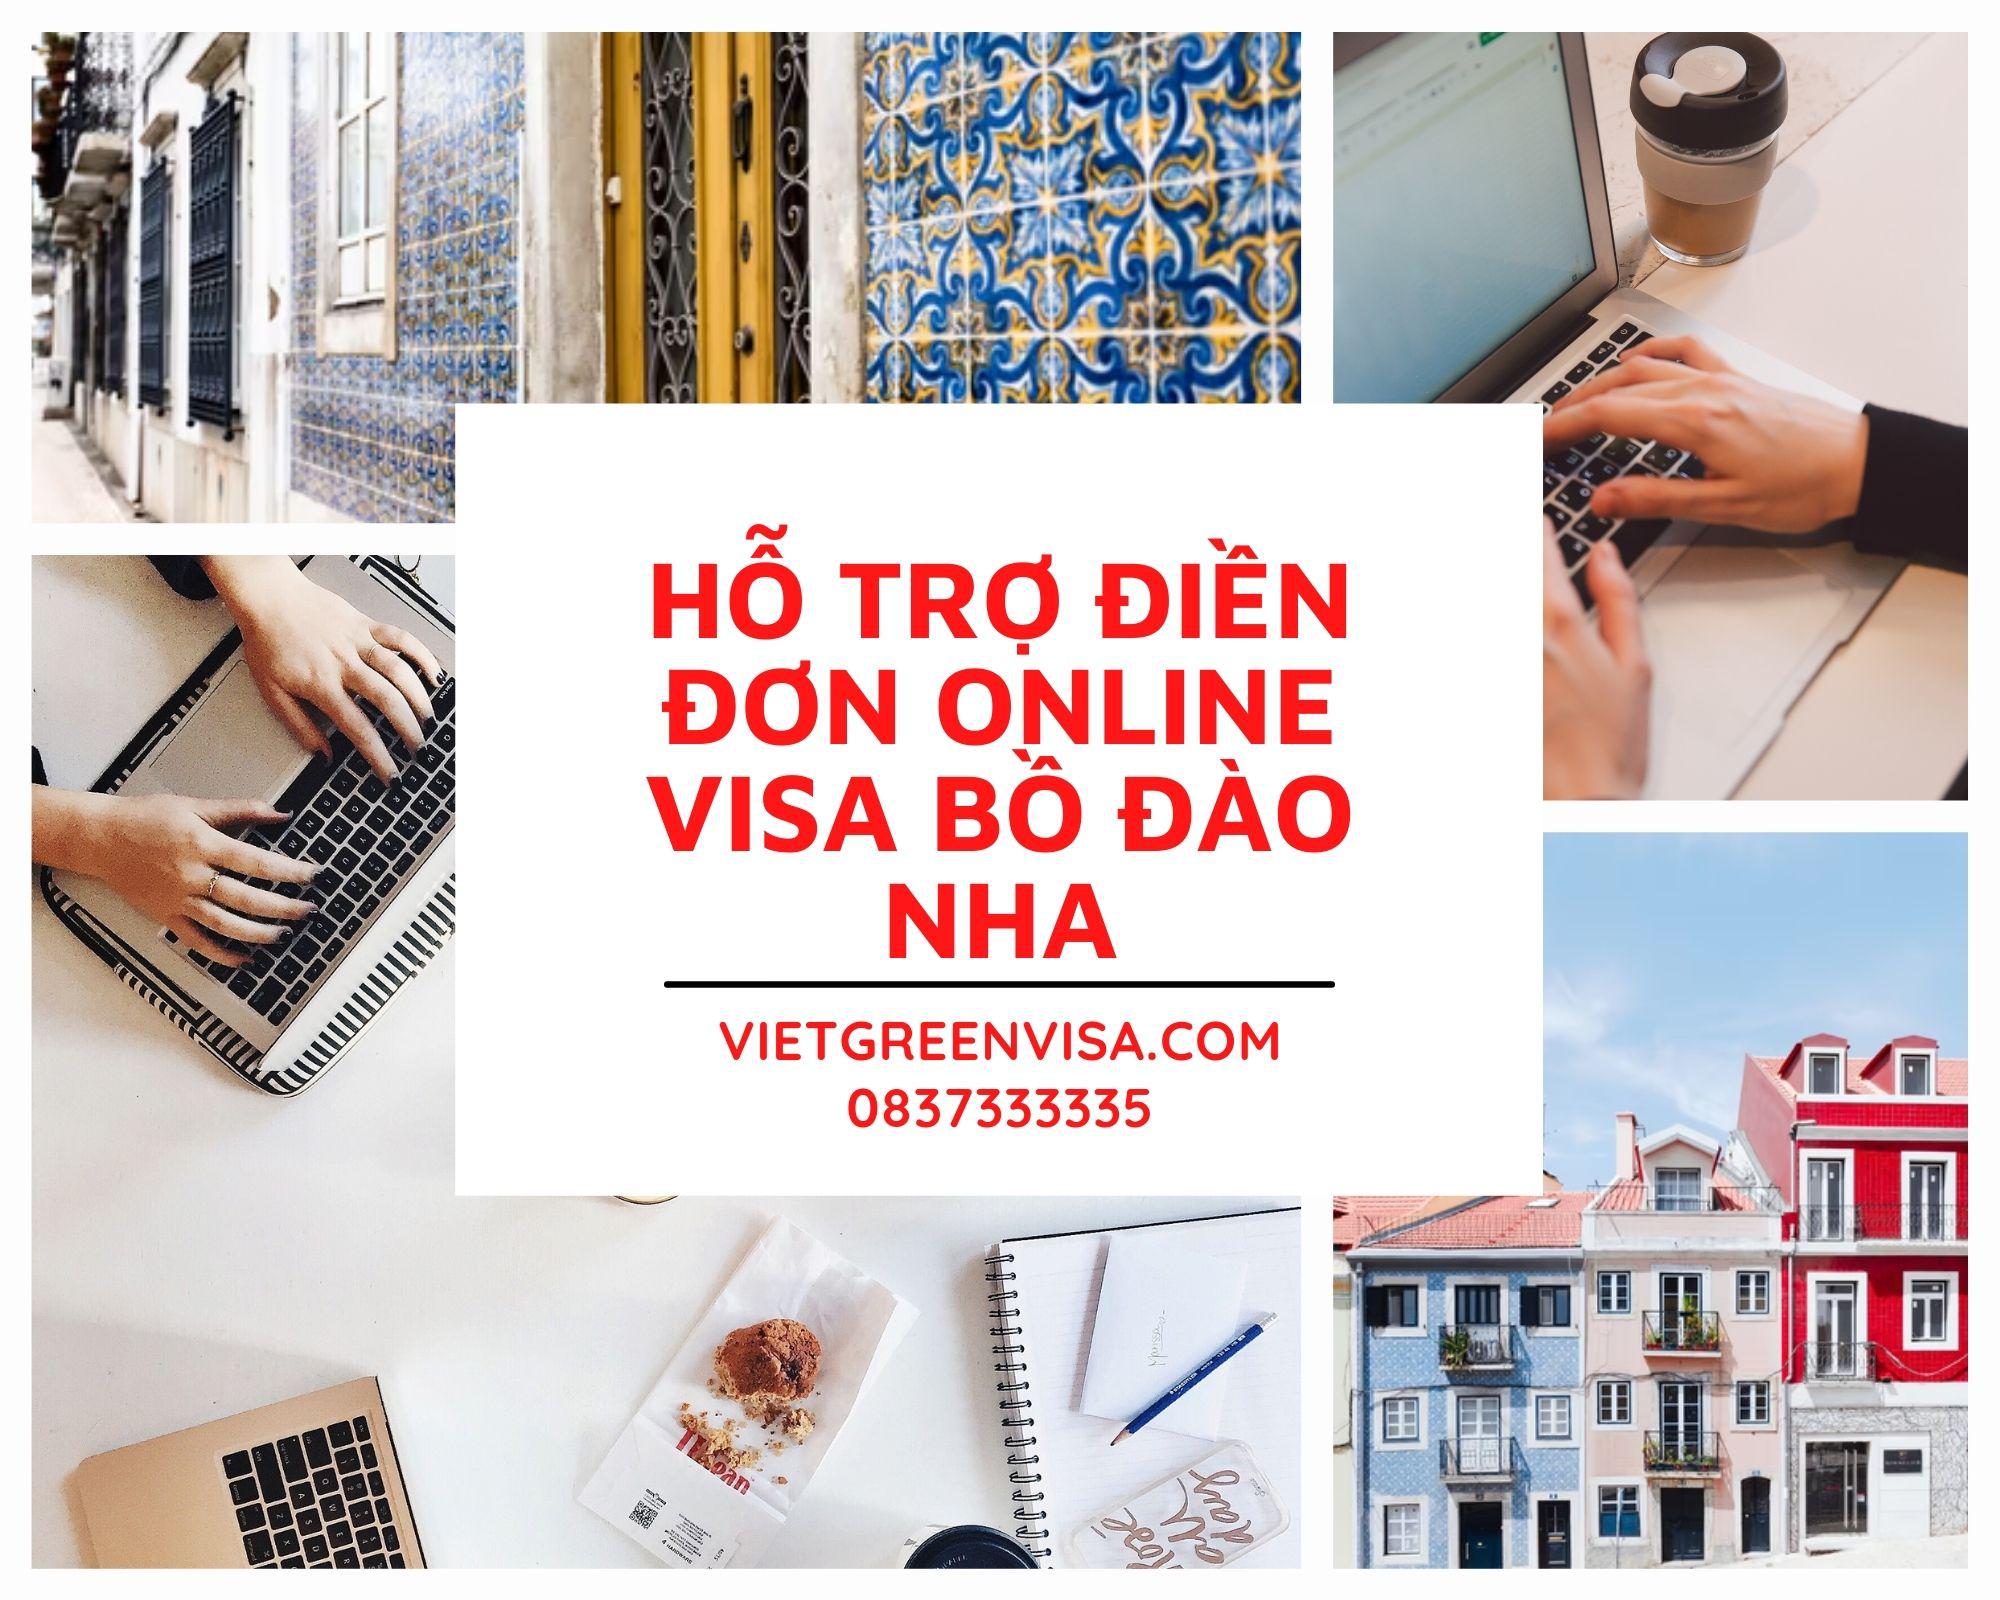 Dịch vụ điền đơn visa Bồ Đào Nha online nhanh